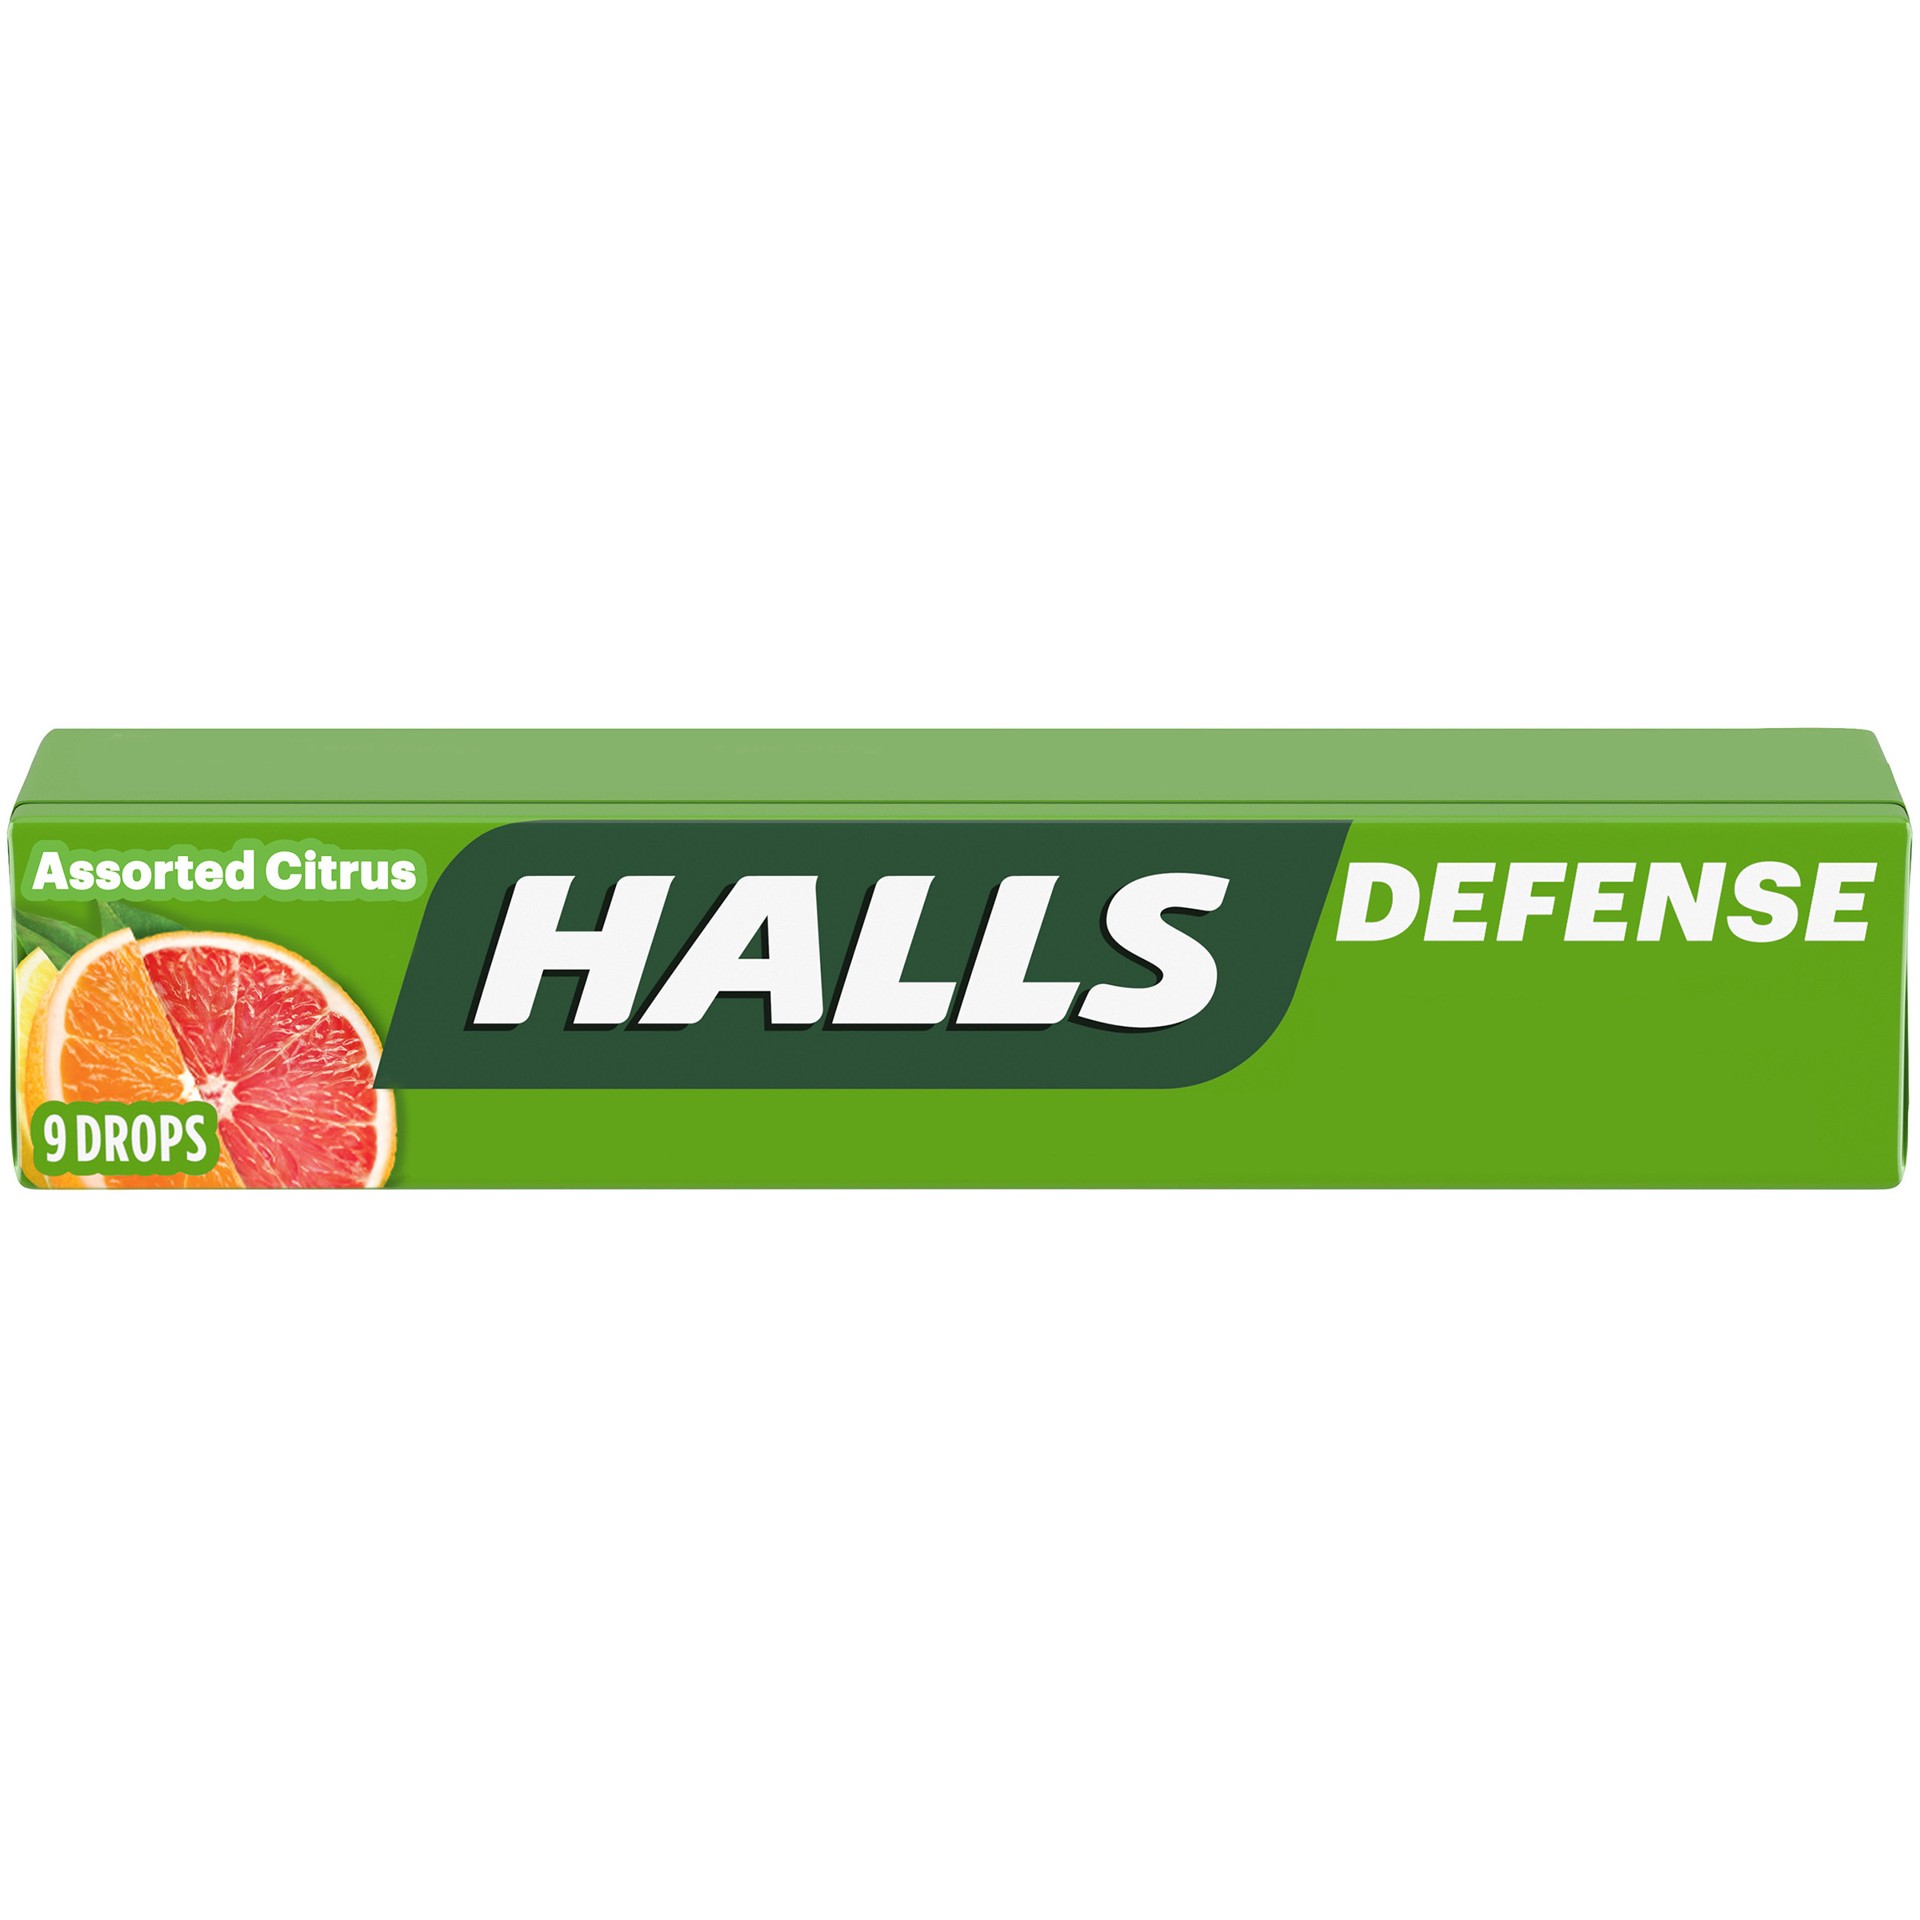 slide 1 of 7, HALLS Defense Assorted Citrus Vitamin C Drops, 9 Drops
, 0.07 lb